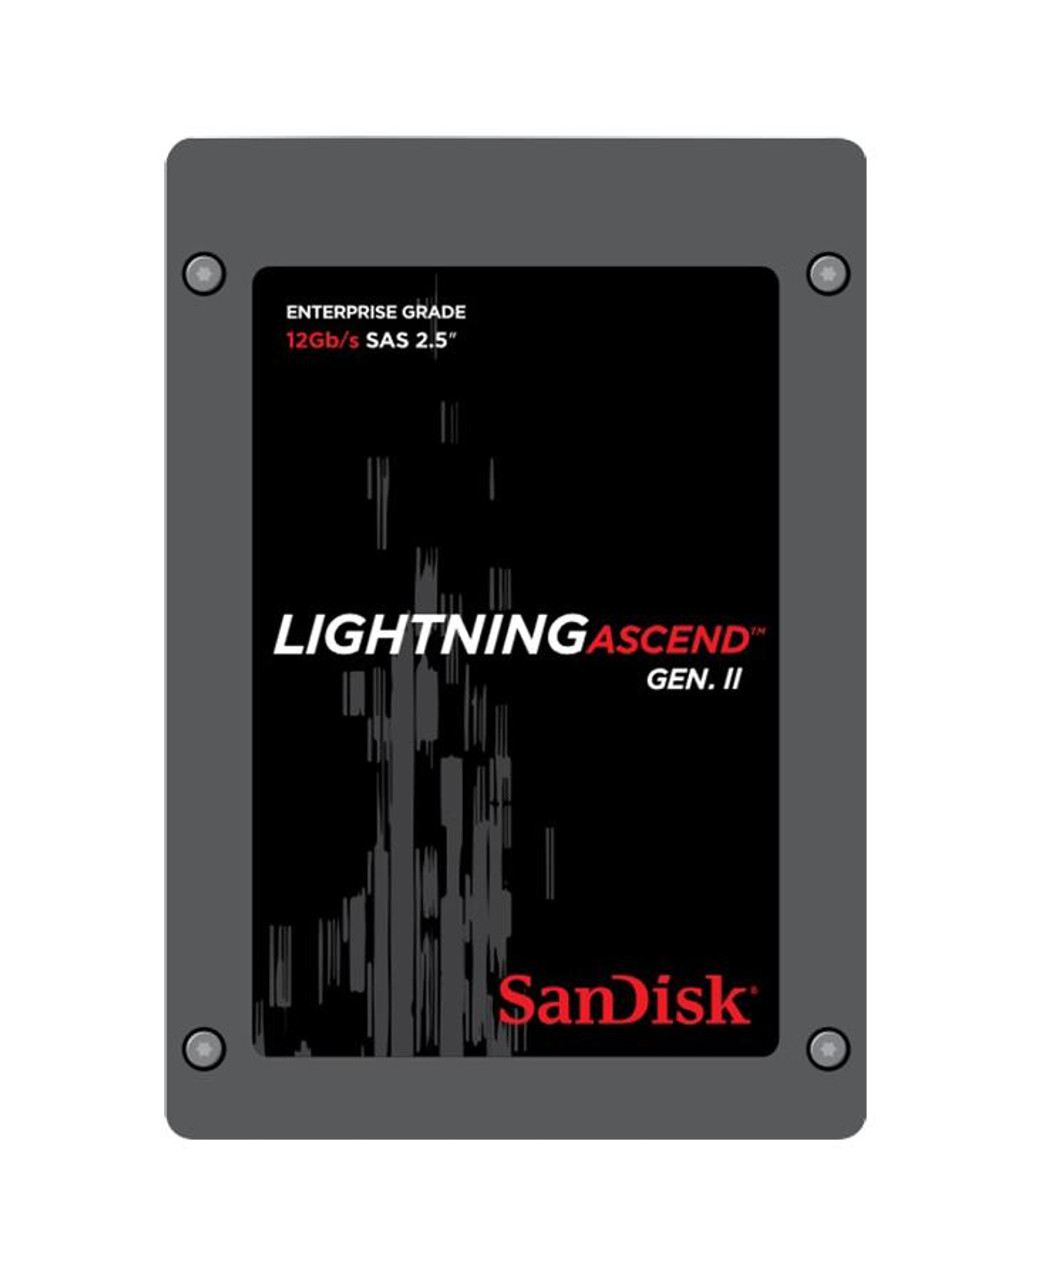 SXKLTK SanDisk Lightning Ascend Gen II 400GB eMLC SAS 12Gbps (SED / ISE) 2.5-inch Internal Solid State Drive (SSD)